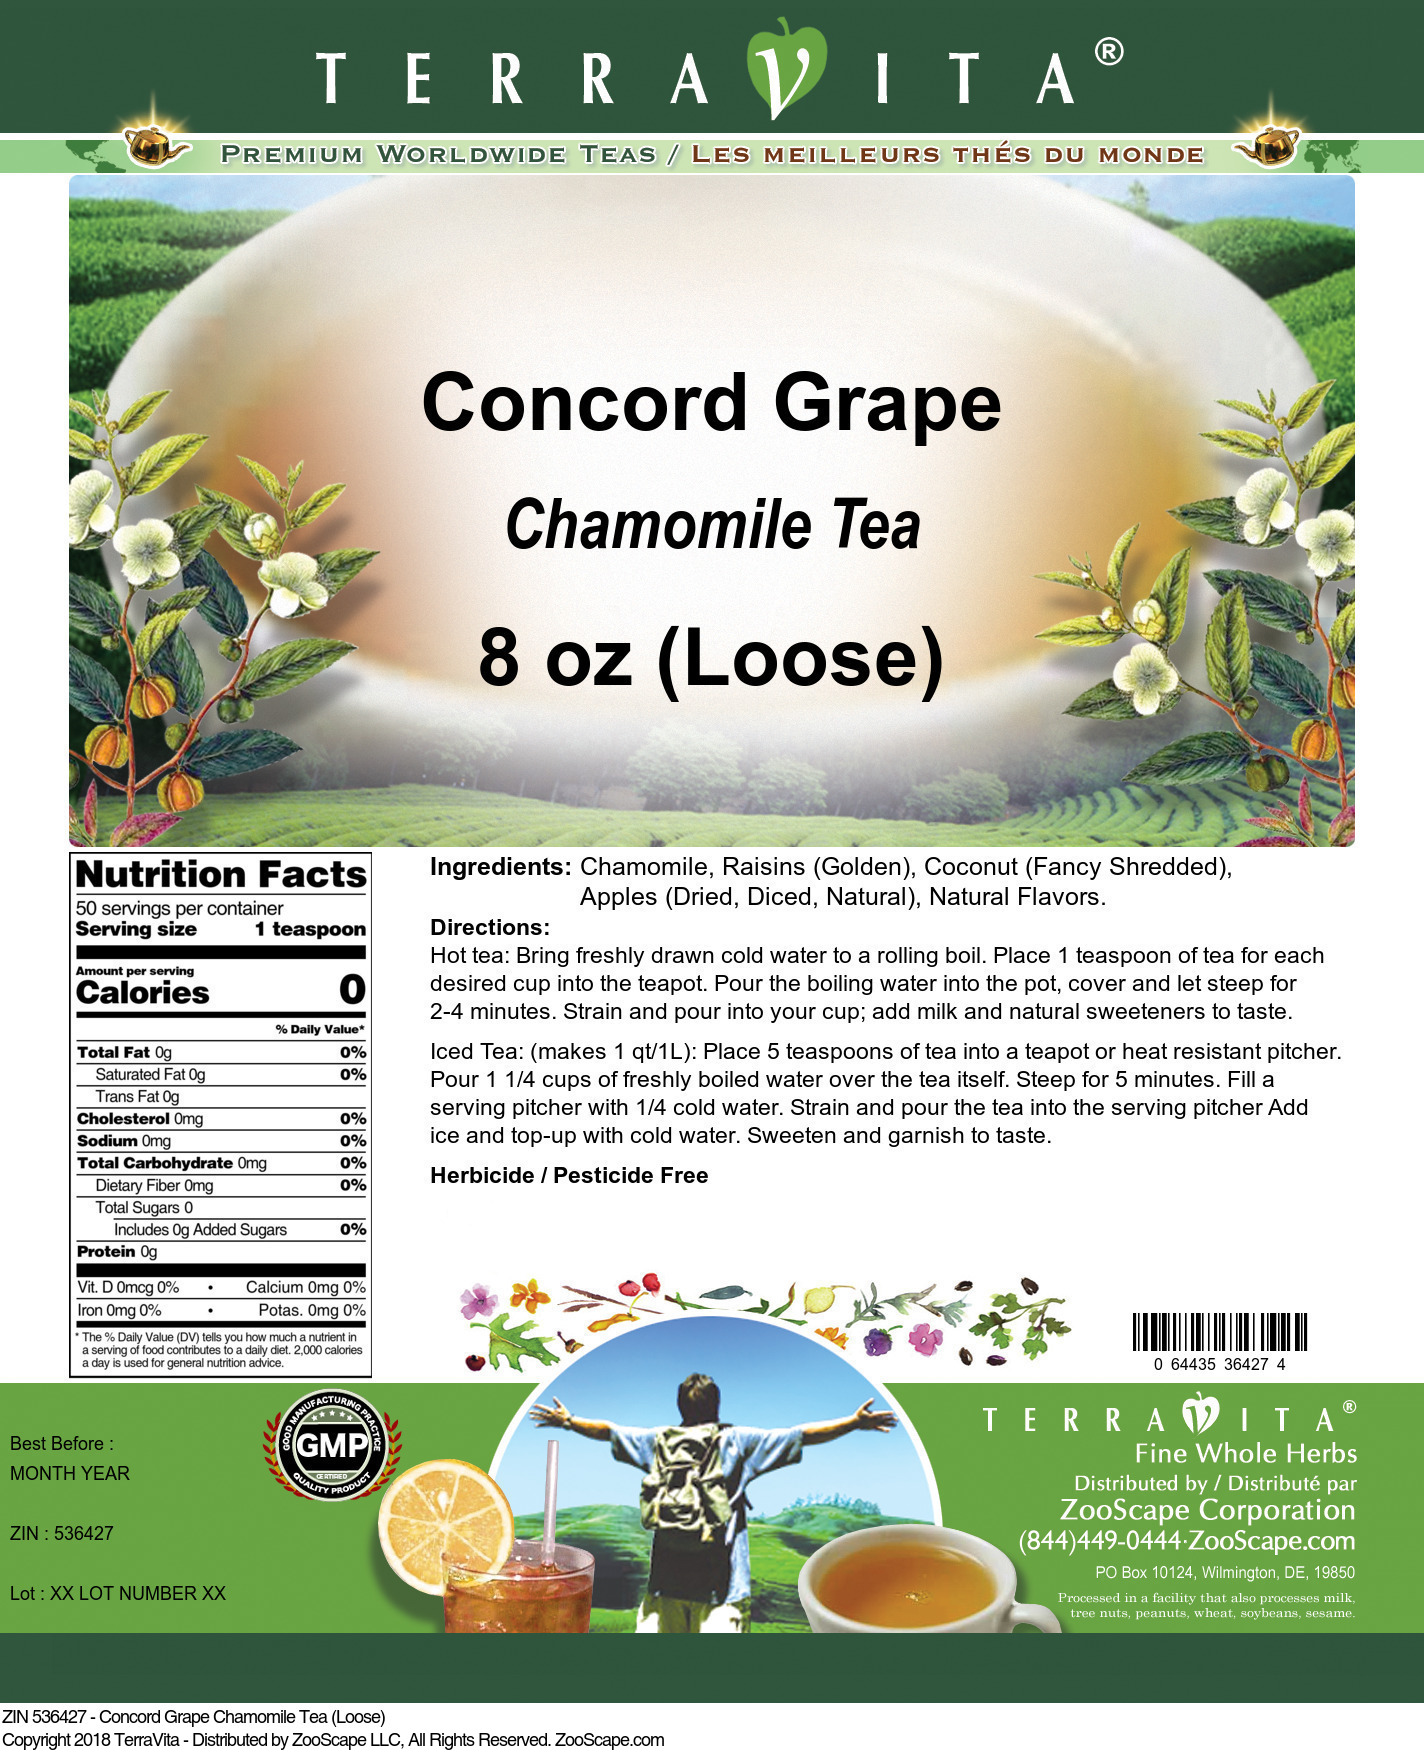 Concord Grape Chamomile Tea (Loose) - Label